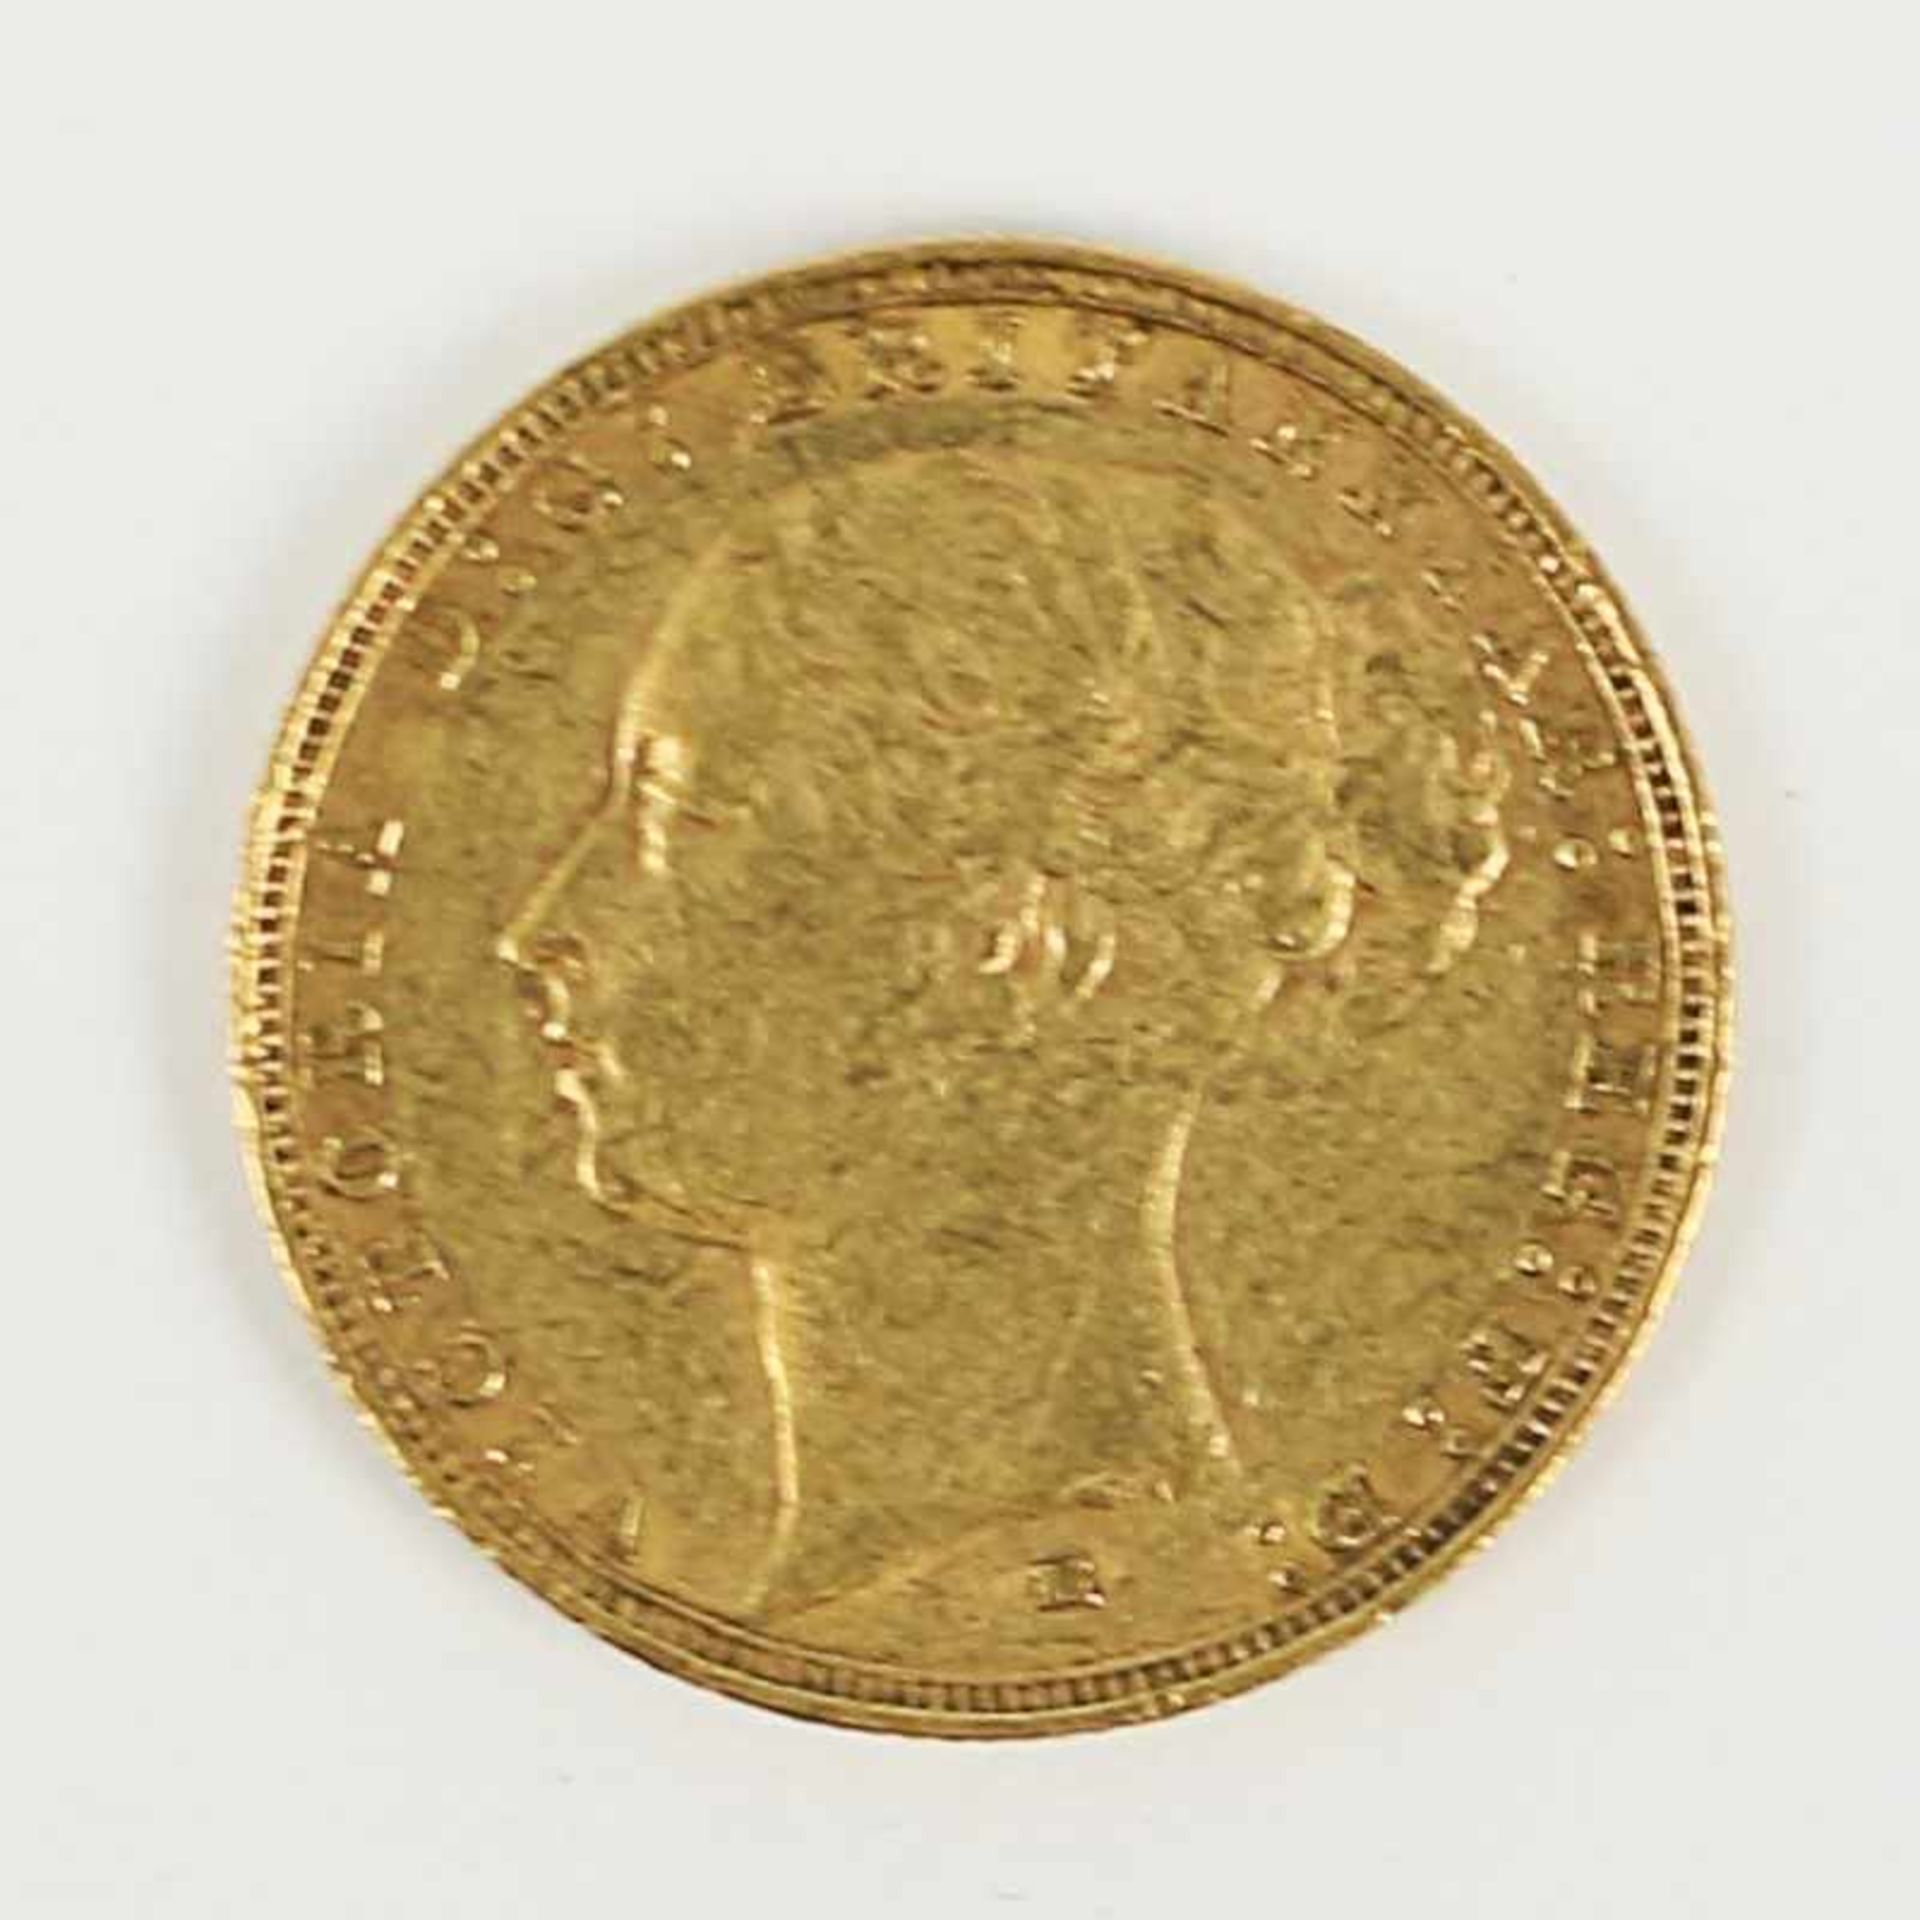 Gold England - 1 Pfund Sovereign 1884 Victoria, M, D 22 mm, G 7g, vz